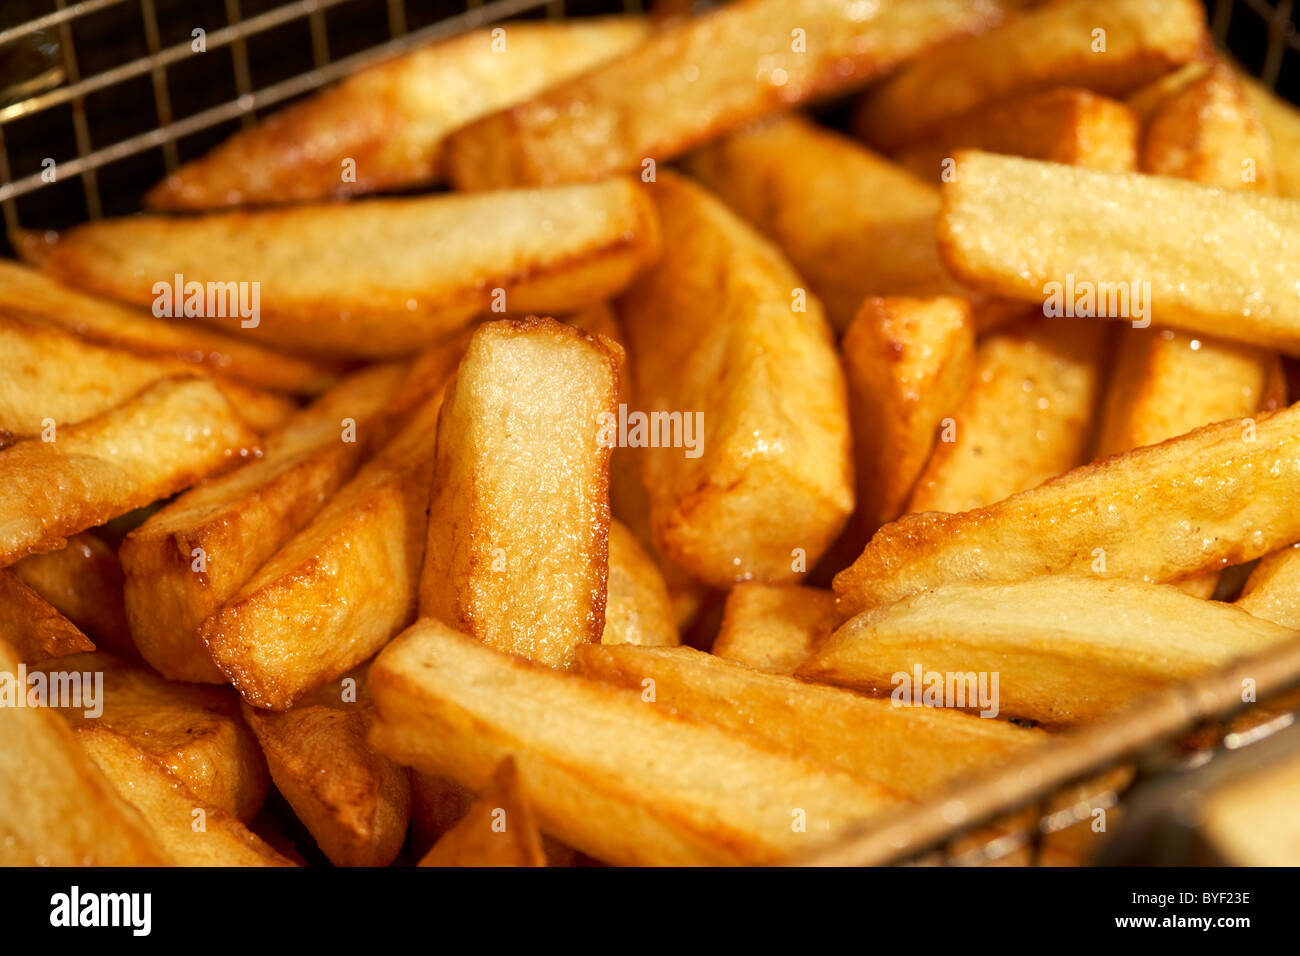 goldbraun gekocht frisch hausgemachten Chips hergestellt aus irischen Kartoffeln in ein tiefes Fett Friteuse Korb Stockfoto